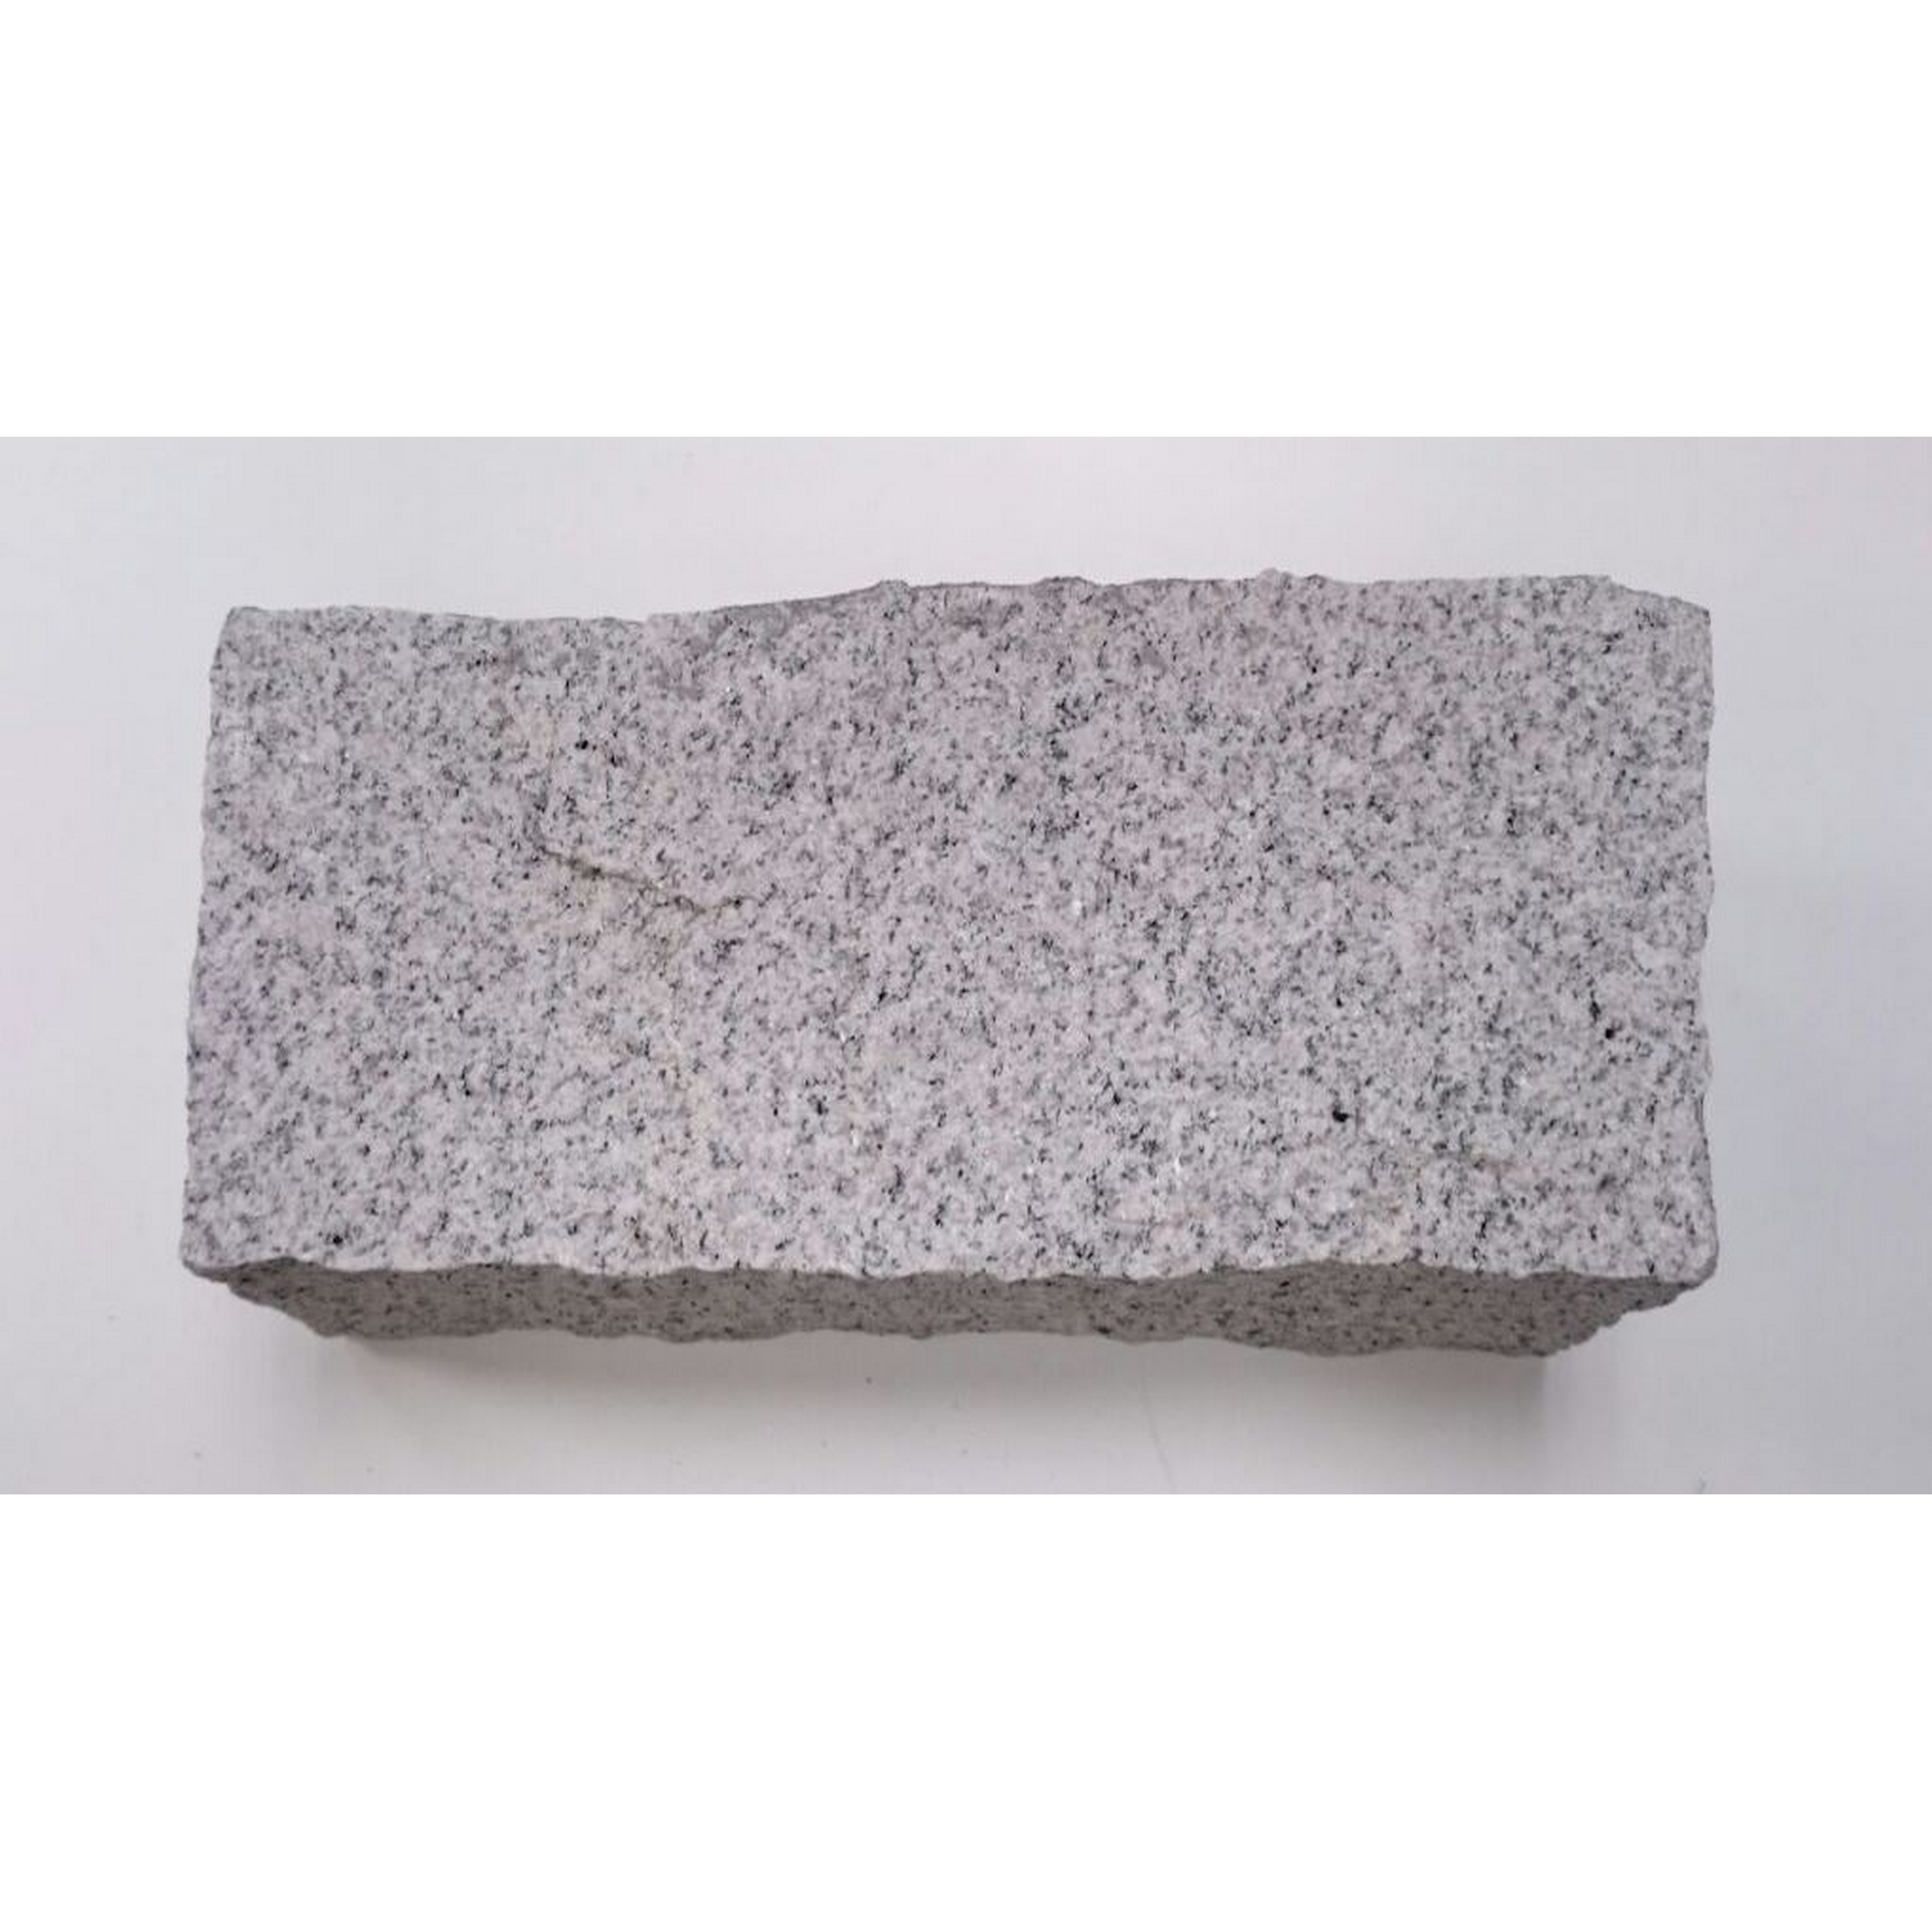 Mauerstein 'XZ Granit' Naturstein grau 35 x 16 x 14 cm + product picture